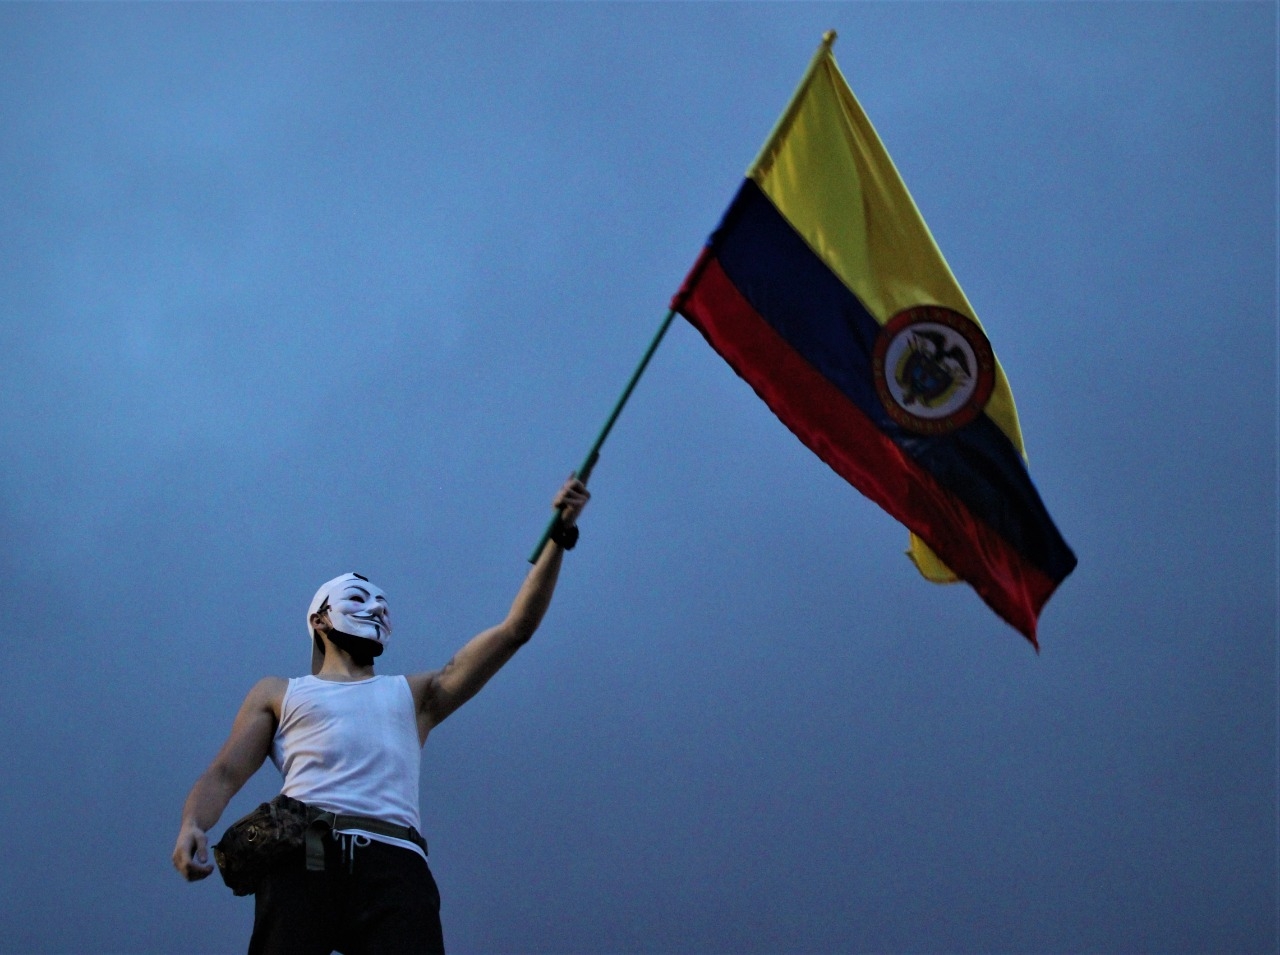 El 84% de los jóvenes colombianos apoya el Paro Nacional en Colombia, según la gran encuesta realizada por UR